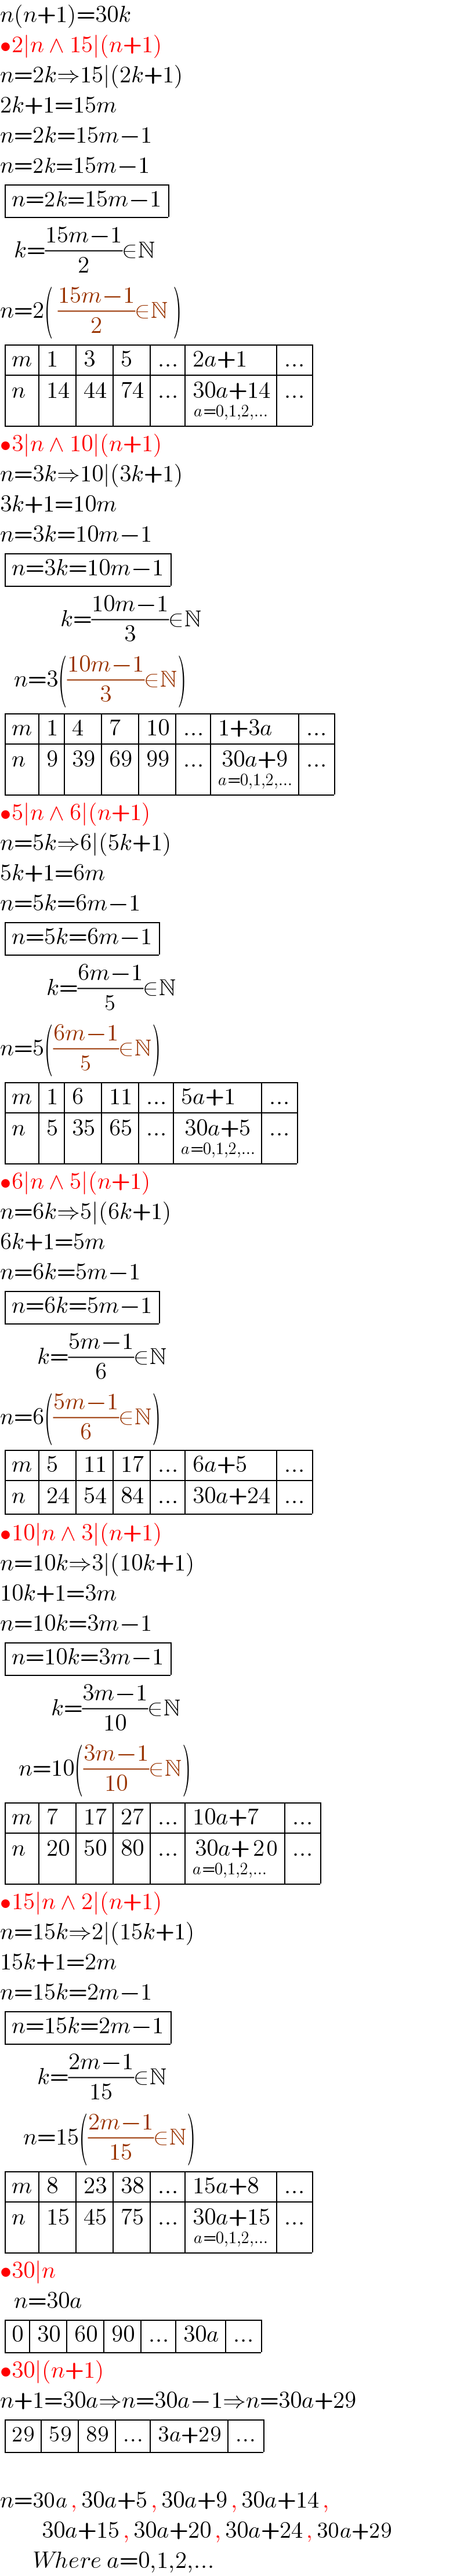 n(n+1)=30k  •2∣n ∧ 15∣(n+1)  n=2k⇒15∣(2k+1)  2k+1=15m  n=2k=15m−1  n=2k=15m−1   determinant (((n=2k=15m−1)))     k=((15m−1)/2)∈N  n=2( ((15m−1)/2)∈N )   determinant ((m,1,3,5,(...),(2a+1),(...)),(n,(14),(44),(74),(...),(30a+14_(a=0,1,2,...) ),(...)))  •3∣n ∧ 10∣(n+1)  n=3k⇒10∣(3k+1)  3k+1=10m  n=3k=10m−1   determinant (((n=3k=10m−1)))               k=((10m−1)/3)∈N     n=3(((10m−1)/3)∈N)   determinant ((m,1,4,7,(10),(...),(1+3a),(...)),(n,9,(39),(69),(99),(...),(30a+9_(a=0,1,2,...) ),(...)))  •5∣n ∧ 6∣(n+1)  n=5k⇒6∣(5k+1)  5k+1=6m  n=5k=6m−1   determinant (((n=5k=6m−1)))            k=((6m−1)/5)∈N  n=5(((6m−1)/5)∈N)   determinant ((m,1,6,(11),(...),(5a+1),(...)),(n,5,(35),(65),(...),(30a+5_(a=0,1,2,...) ),(...)))  •6∣n ∧ 5∣(n+1)  n=6k⇒5∣(6k+1)  6k+1=5m  n=6k=5m−1   determinant (((n=6k=5m−1)))          k=((5m−1)/6)∈N  n=6(((5m−1)/6)∈N)   determinant ((m,5,(11),(17),(...),(6a+5),(...)),(n,(24),(54),(84),(...),(30a+24),(...)))  •10∣n ∧ 3∣(n+1)  n=10k⇒3∣(10k+1)  10k+1=3m  n=10k=3m−1   determinant (((n=10k=3m−1)))             k=((3m−1)/(10))∈N      n=10(((3m−1)/(10))∈N)   determinant ((m,7,(17),(27),(...),(10a+7),(...)),(n,(20),(50),(80),(...),(30a+ 2_(a=0,1,2,...) 0),(...)))  •15∣n ∧ 2∣(n+1)  n=15k⇒2∣(15k+1)  15k+1=2m  n=15k=2m−1   determinant (((n=15k=2m−1)))          k=((2m−1)/(15))∈N       n=15(((2m−1)/(15))∈N)   determinant ((m,8,(23),(38),(...),(15a+8),(...)),(n,(15),(45),(75),(...),(30a+15_(a=0,1,2,...) ),(...)))  •30∣n      n=30a   determinant ((0,(30),(60),(90),(...),(30a),(...)))   •30∣(n+1)  n+1=30a⇒n=30a−1⇒n=30a+29   determinant (((29),(59),(89),(...),(3a+29),(...)))    n=30a , 30a+5 , 30a+9 , 30a+14 ,           30a+15 , 30a+20 , 30a+24 , 30a+29           Where a=0,1,2,...  